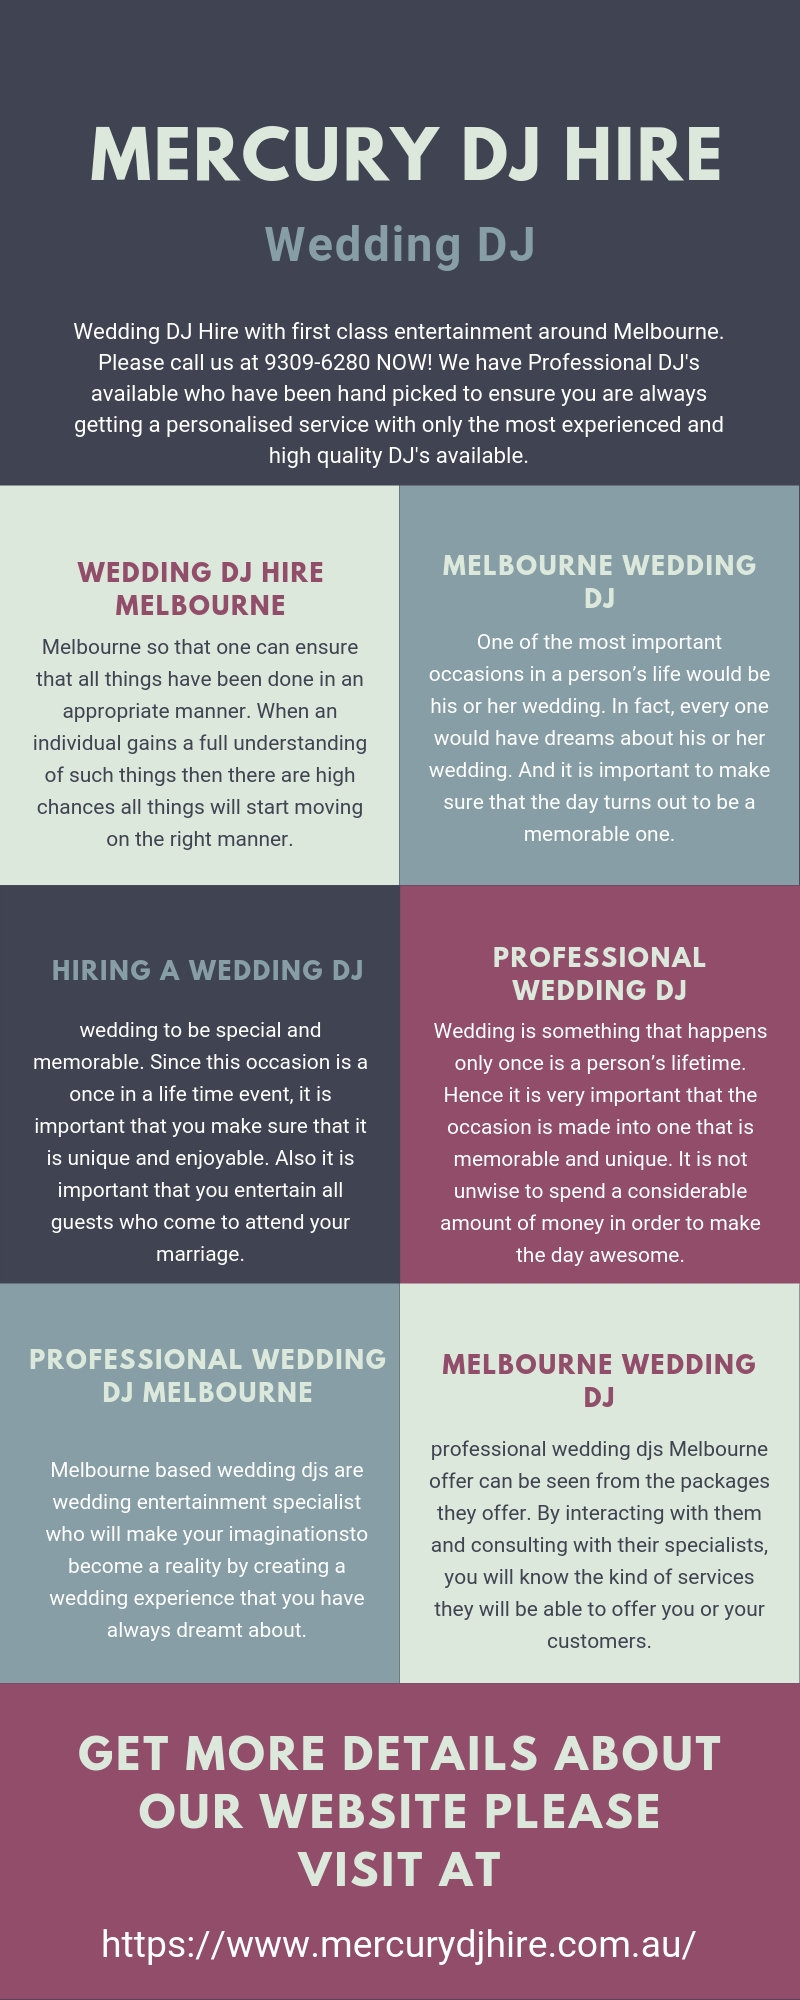 Melbourne Based Wedding DJ.jpg  by Mercurydjhire